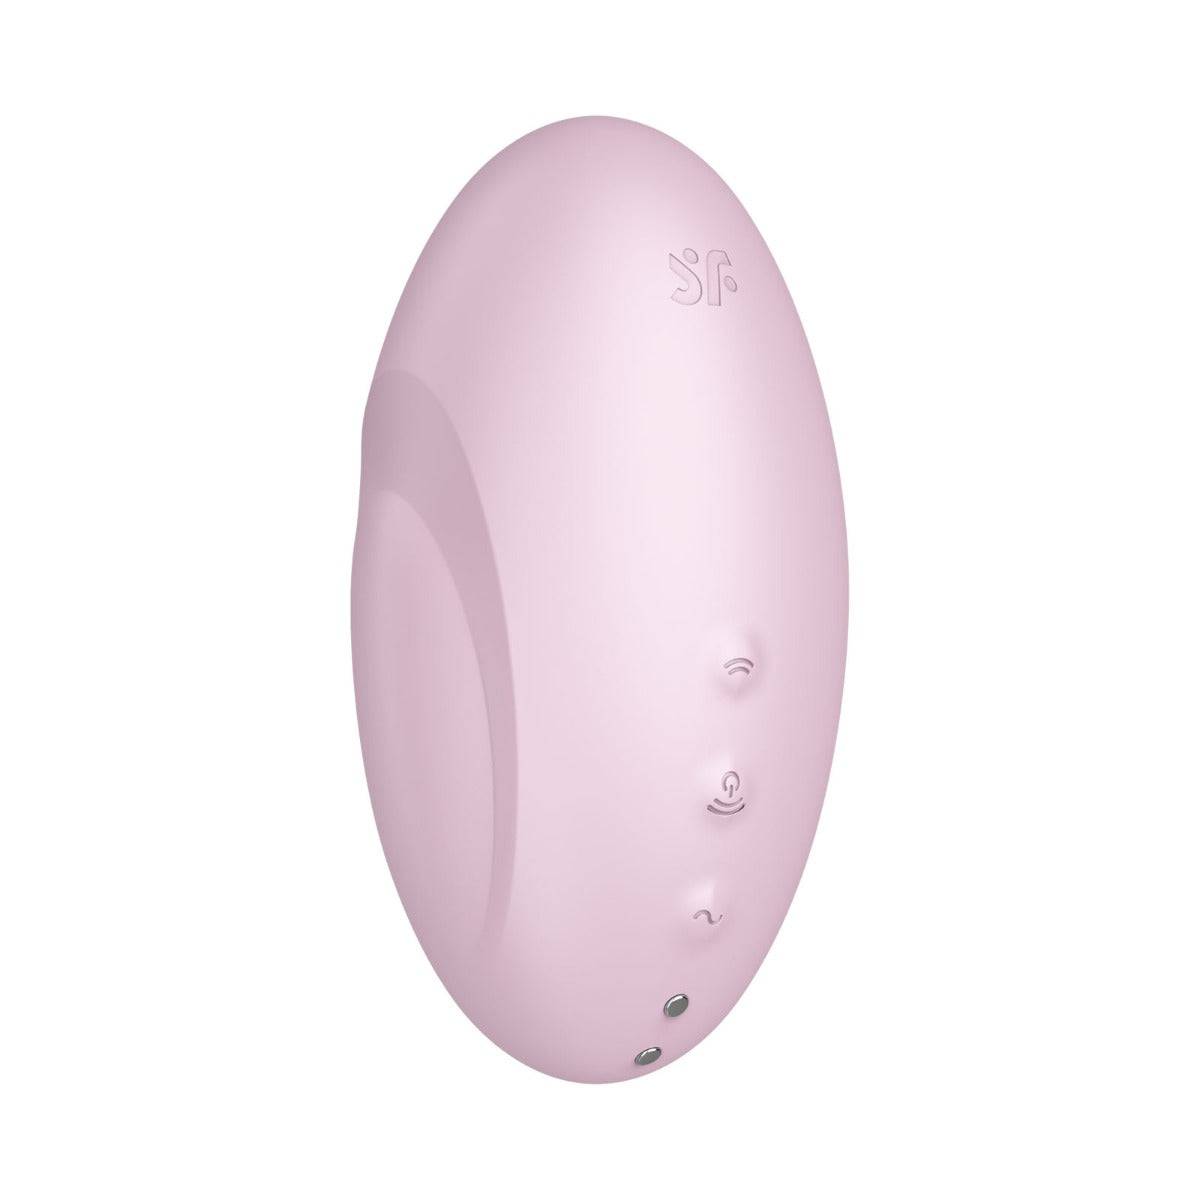 Satisfyer Vulva Lover 3 Air Pulse Stimulator Pink